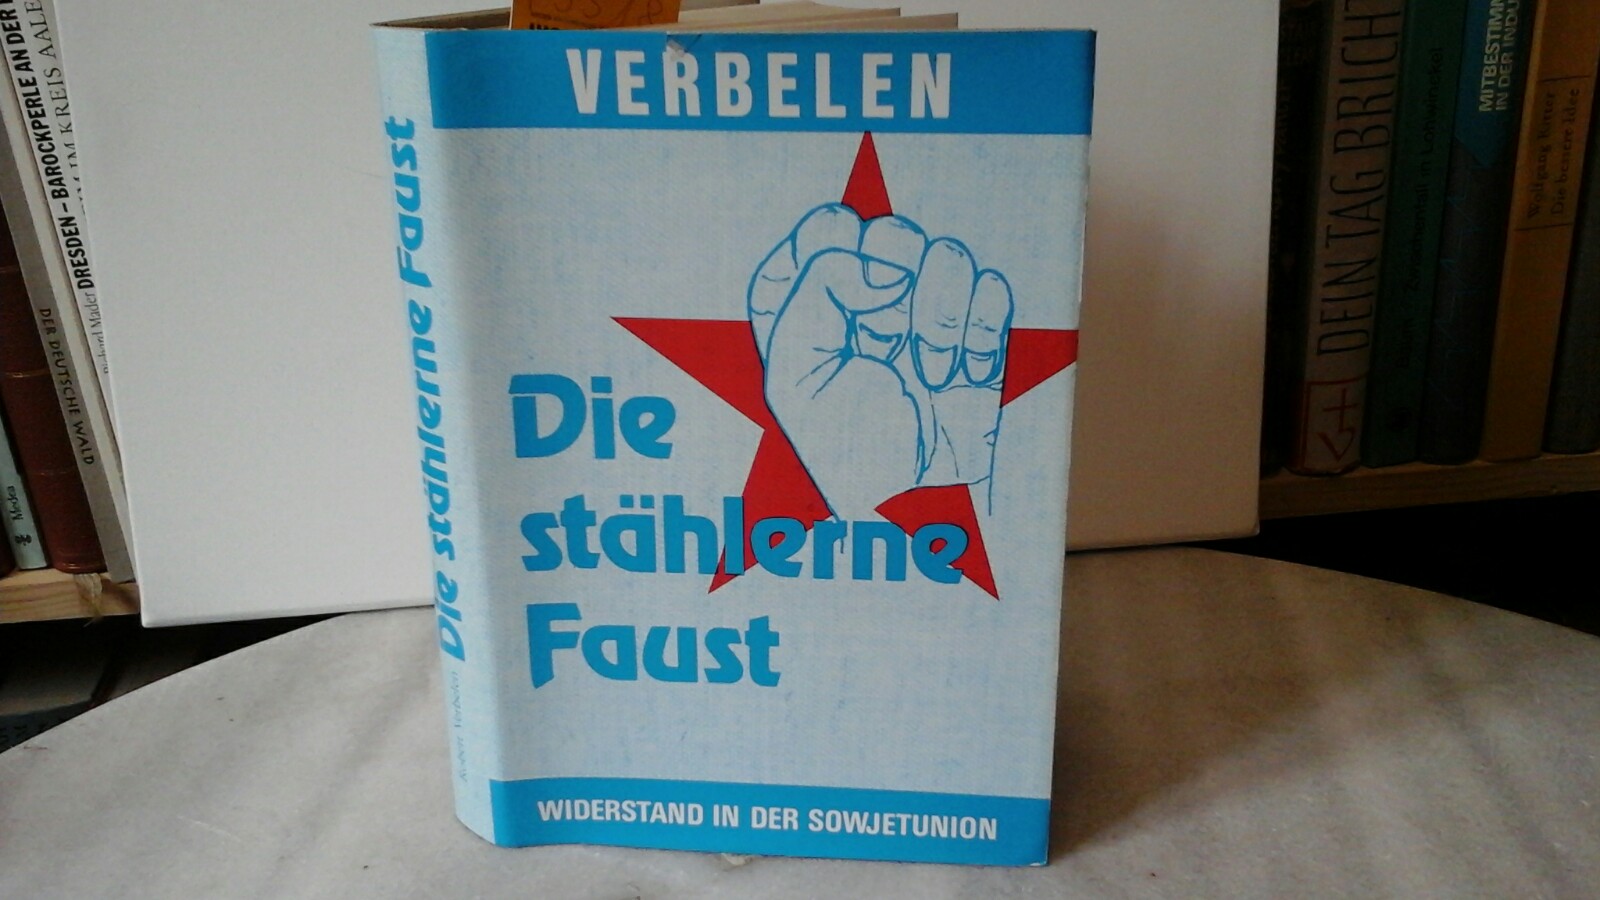 Die stählerne Faust. Widerstand in der Sowjetunion. Erste /1./ Auflage. - VERBELEN, ROBERT